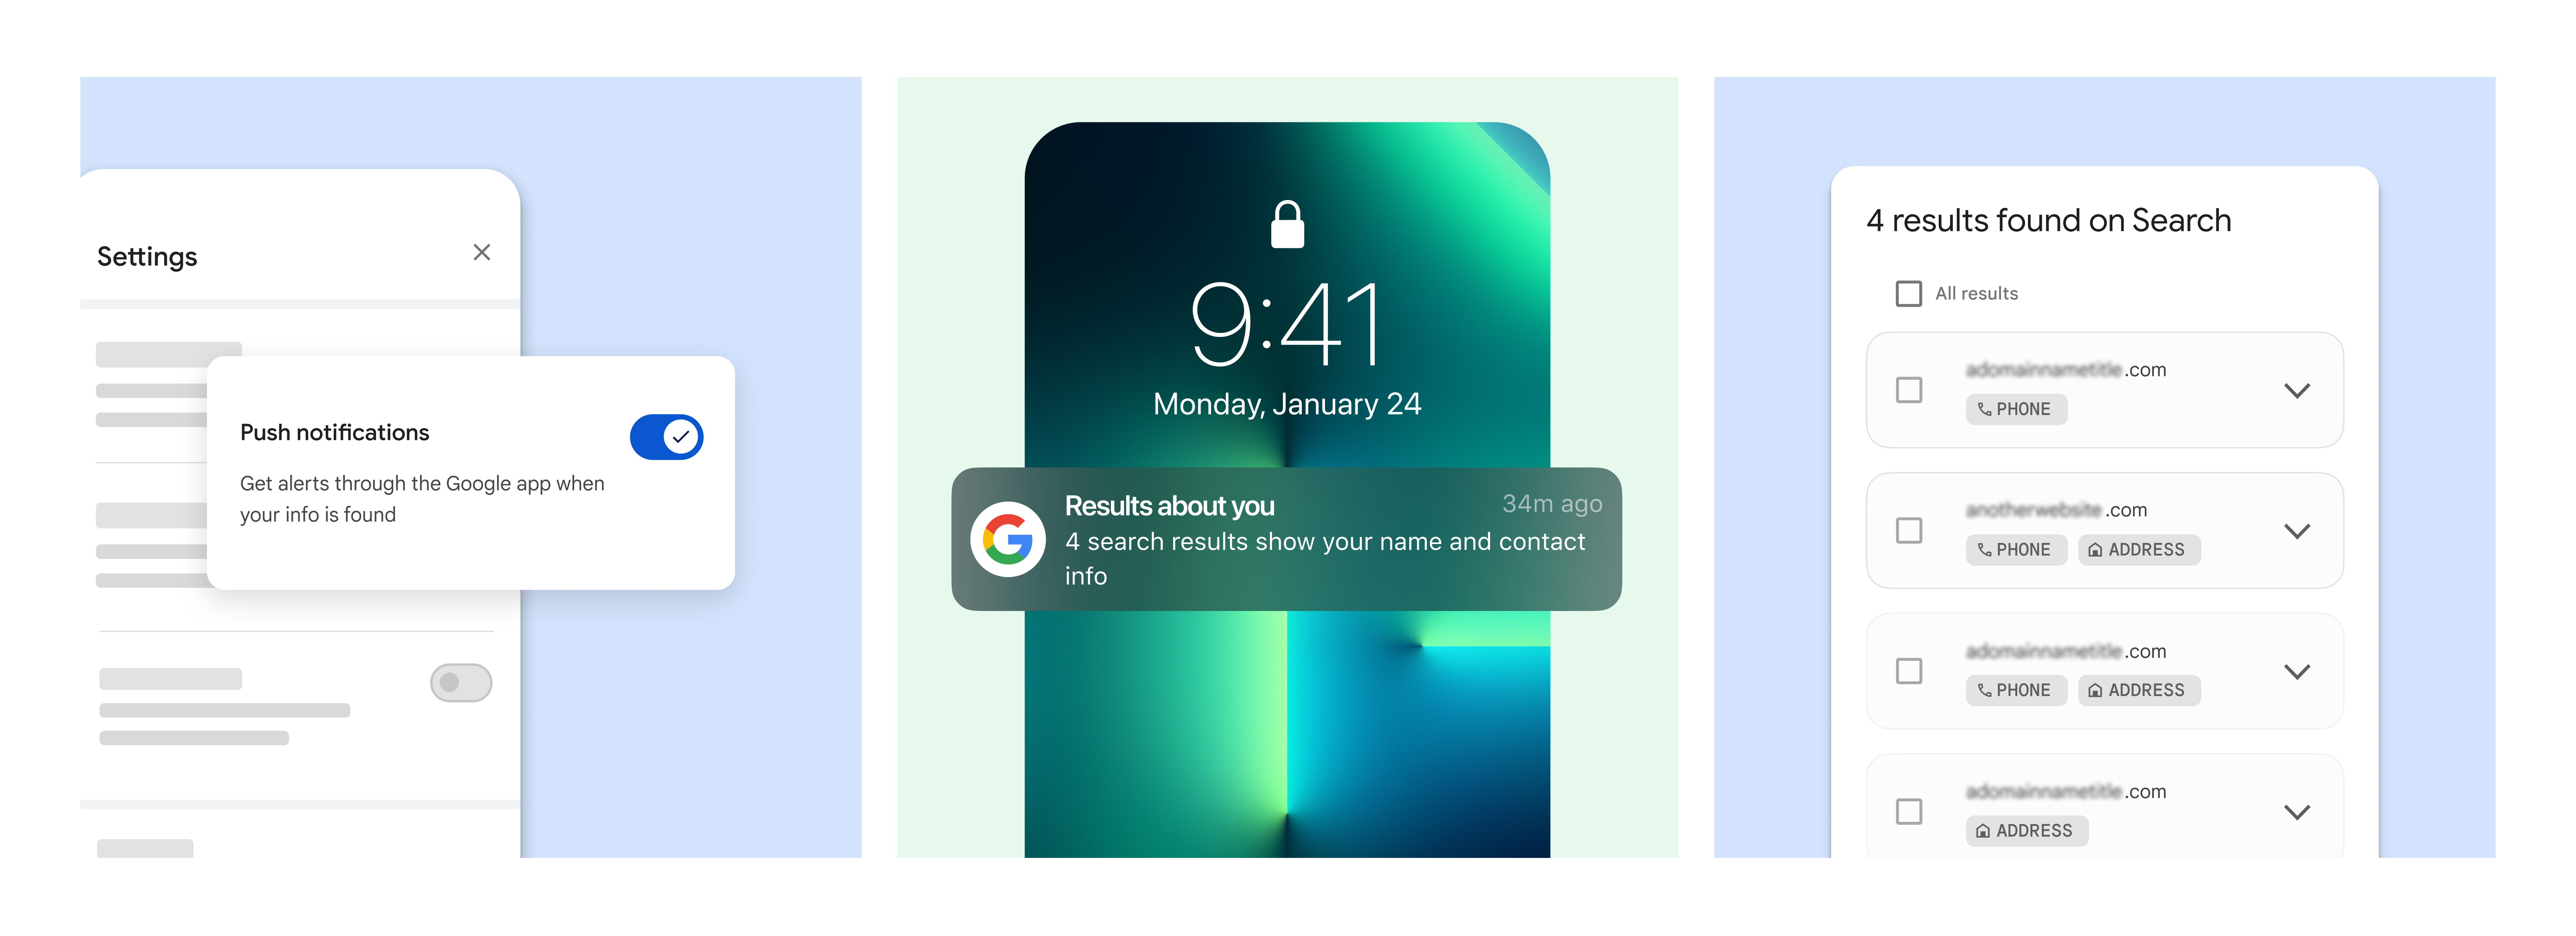 Google verbetert privacytools om persoonlijke gegevens te beschermen